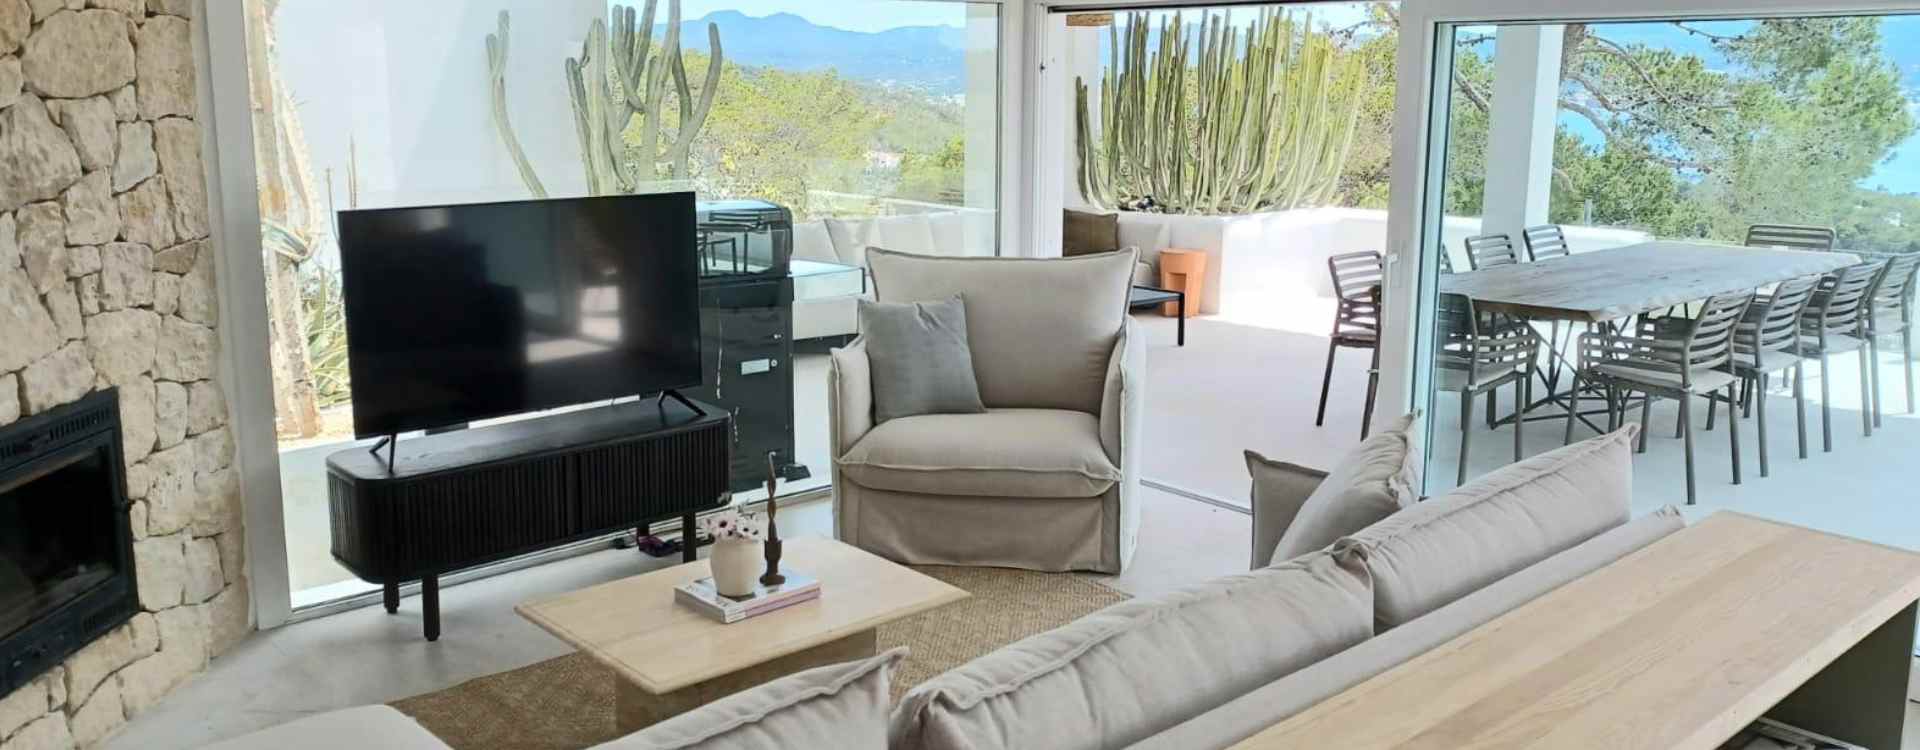 Ibiza - vakantiehuis - villa rental 